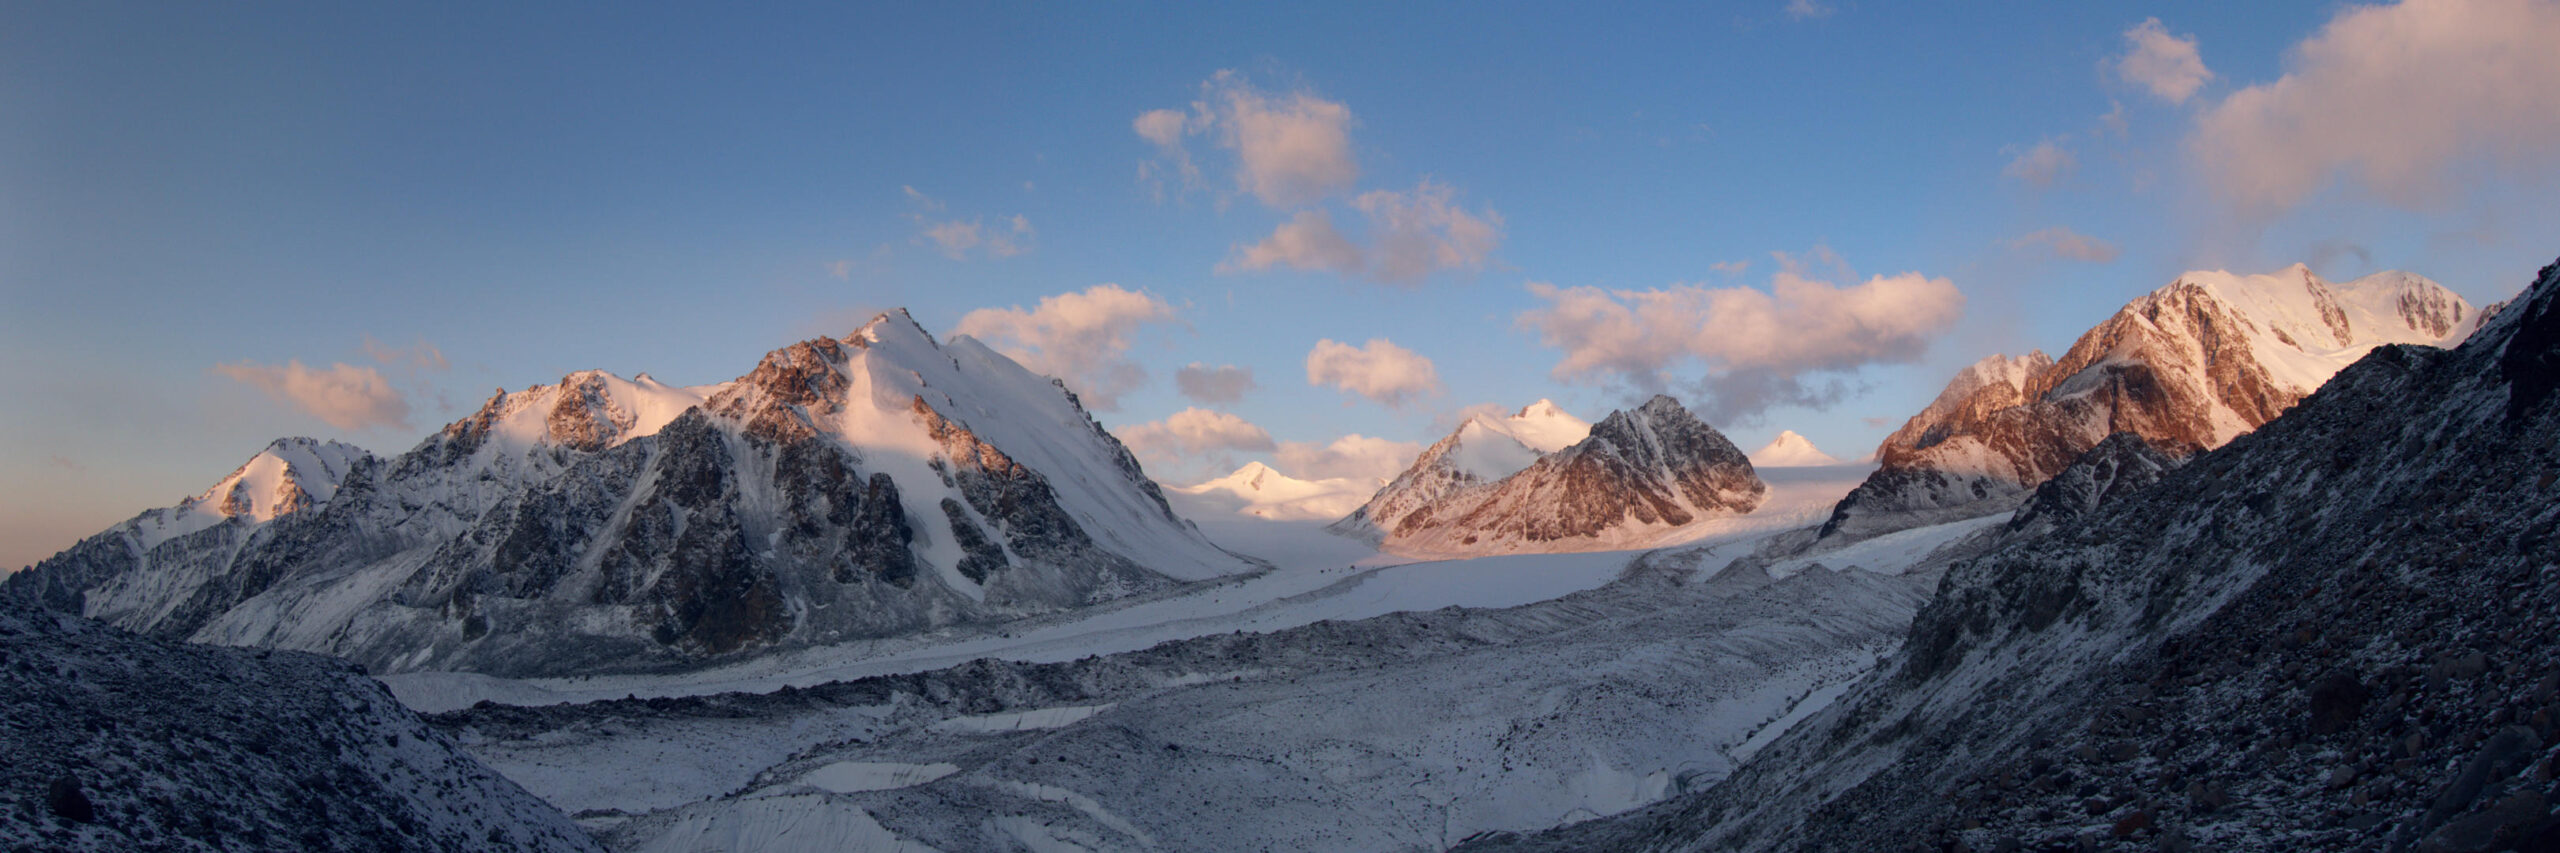 Ледник Корженевского при солнечном восходе